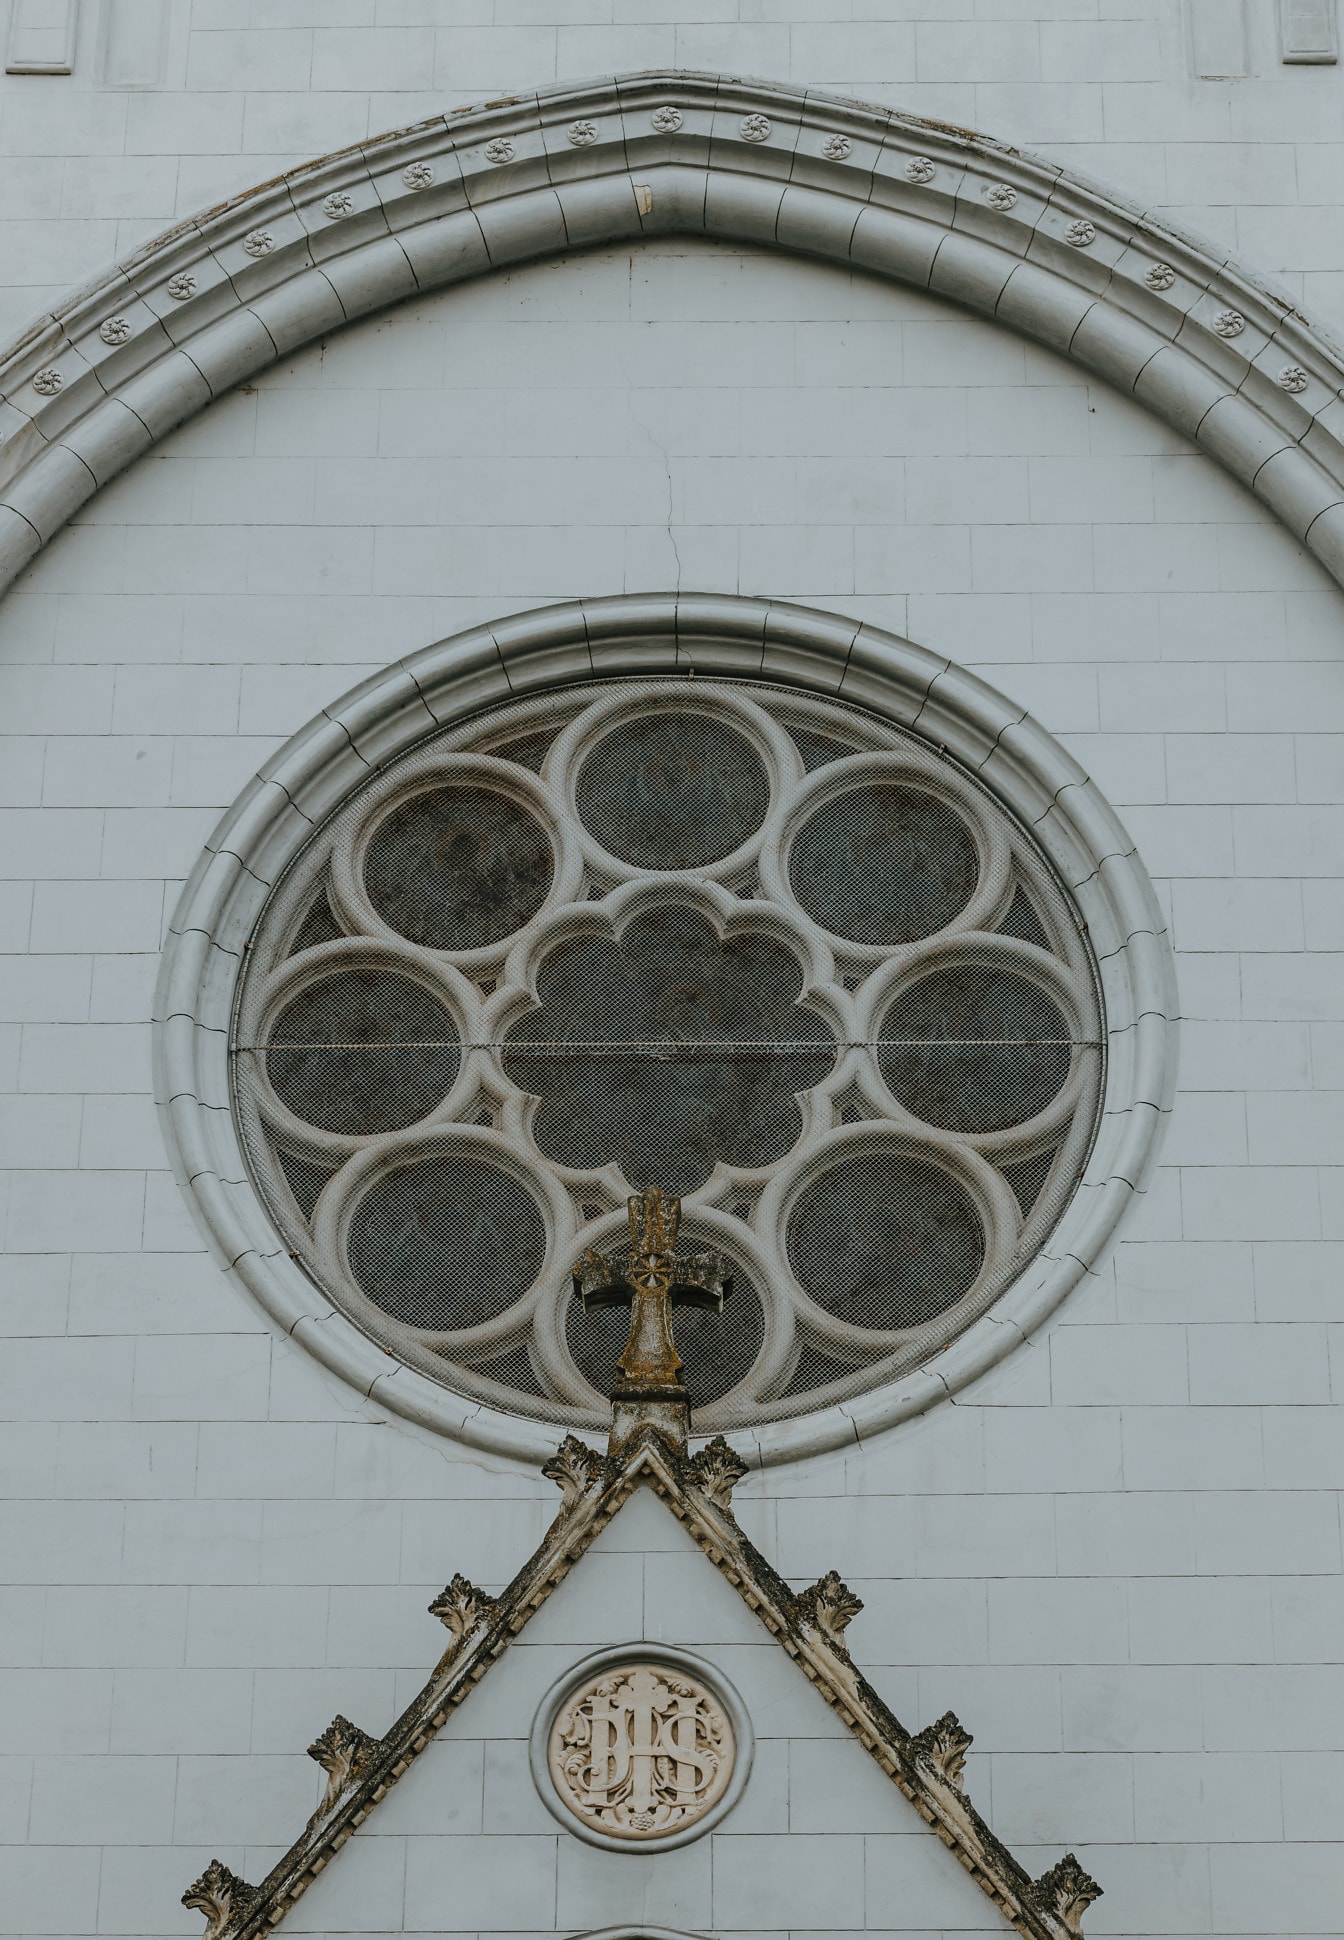 Exteriér gotickej katedrály s okrúhlym oknom s ornamentálnymi detailmi